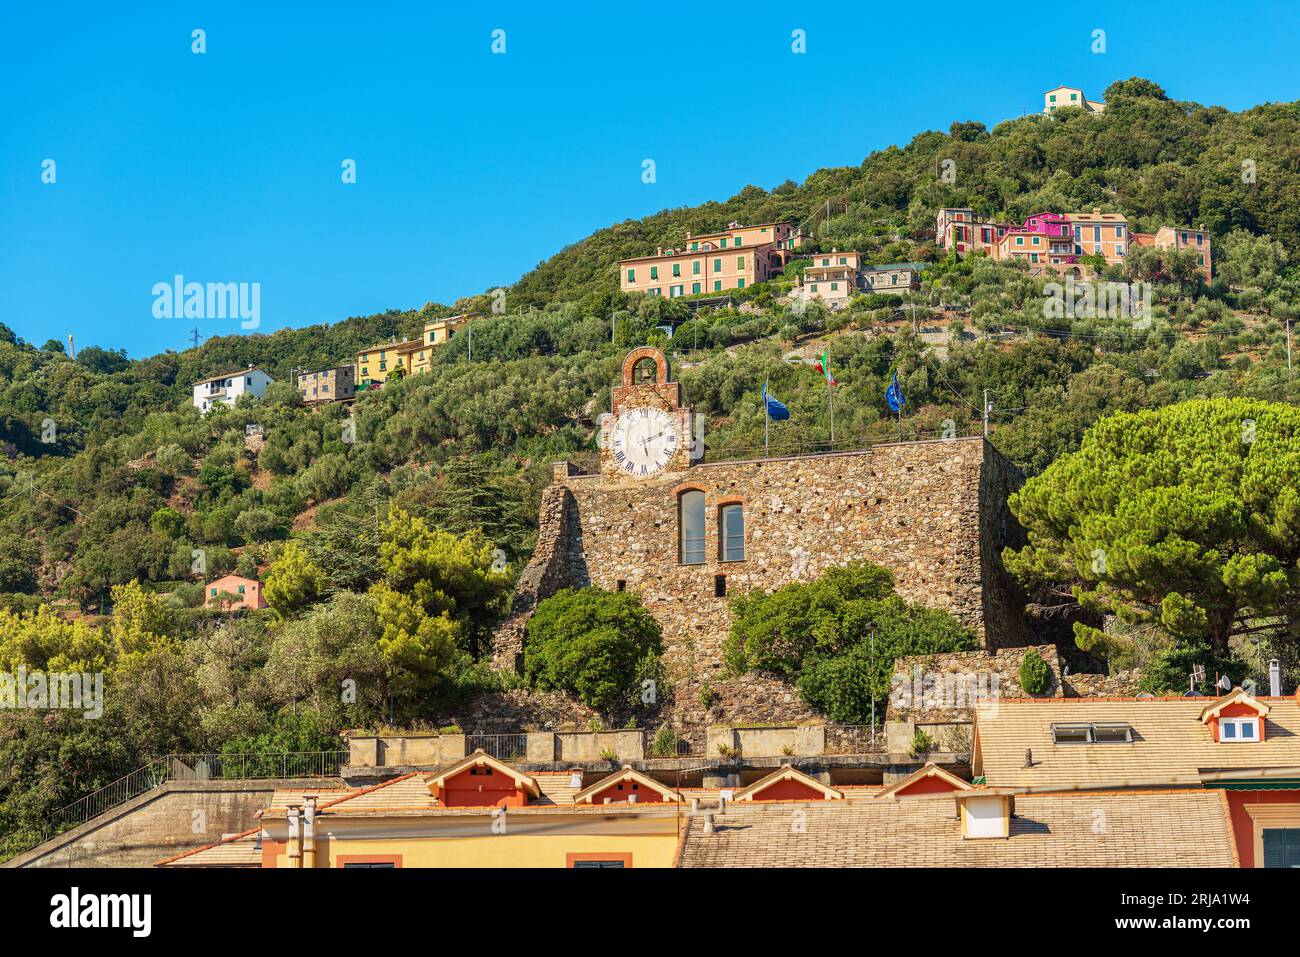 Antico castello del borgo di Bonassola (XVI secolo), la Spezia, Liguria, Italia, Europa. Questo castello doveva difendersi dagli attacchi dei pirati. Foto Stock